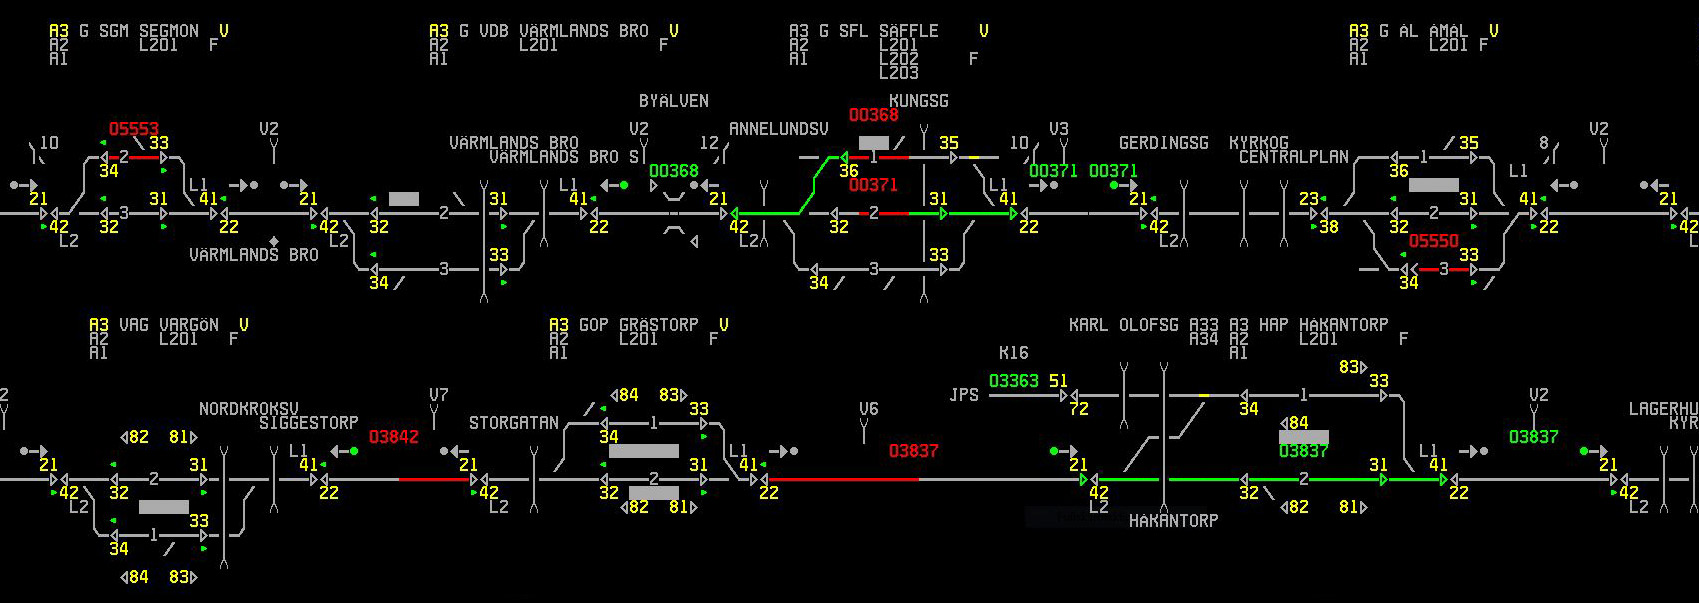 Bild: Översiktsbild av tågtrafik på dator